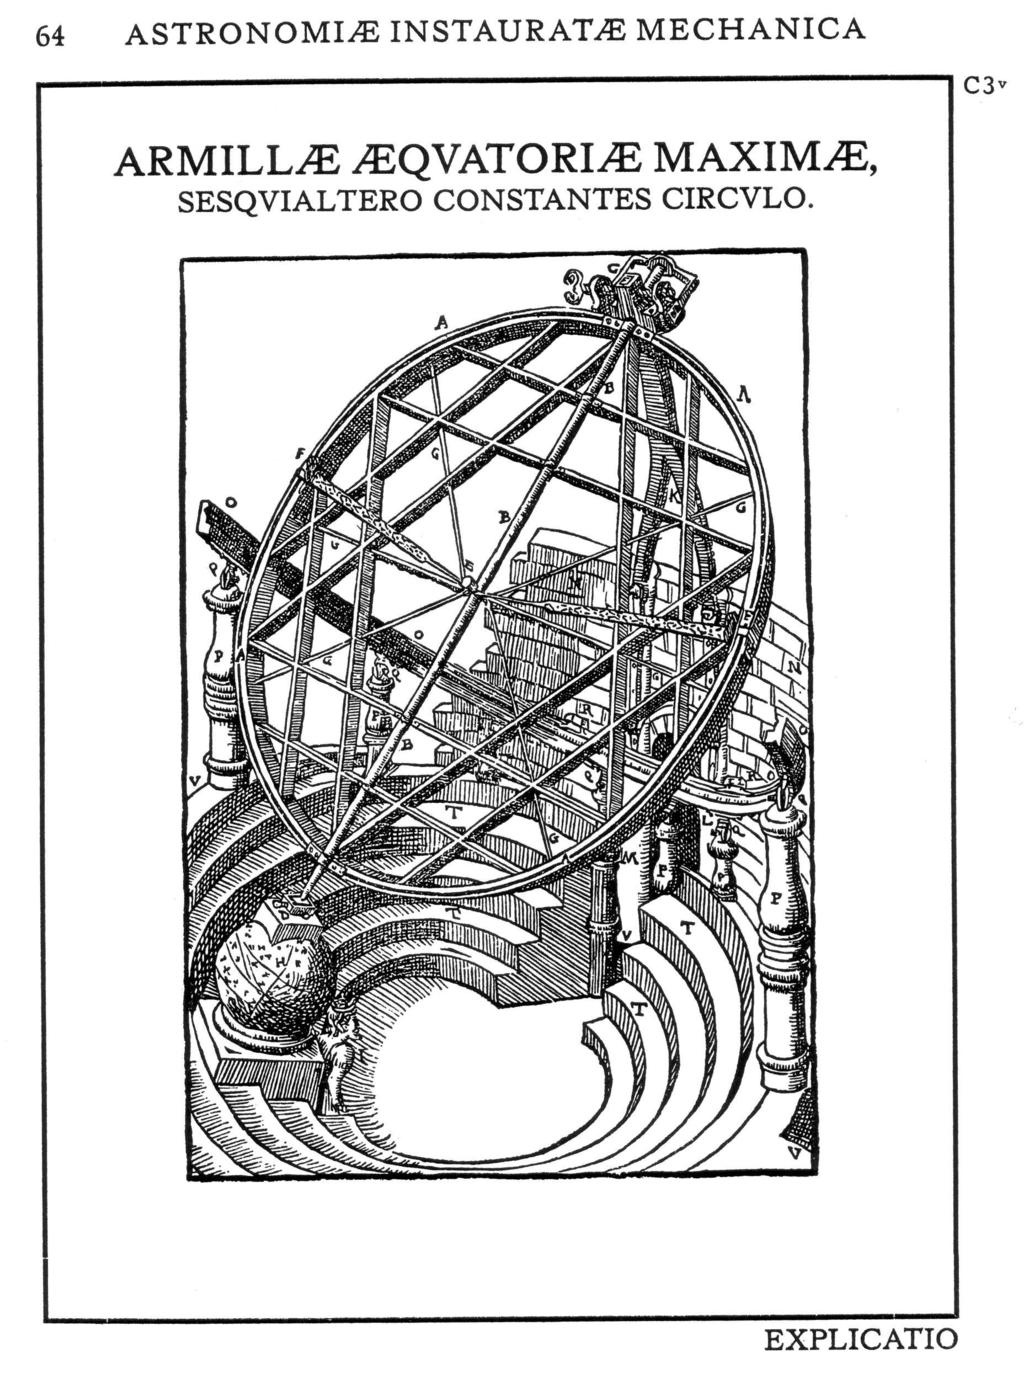 Abbildung 3.0.10.: Die sog. großen Armillen in dem halb unterirdischen Observatorium. Tychos Lebenswerk wurde von anderen vollendet. Der Sternkatalog bildete die Grundlage für den von Joh.